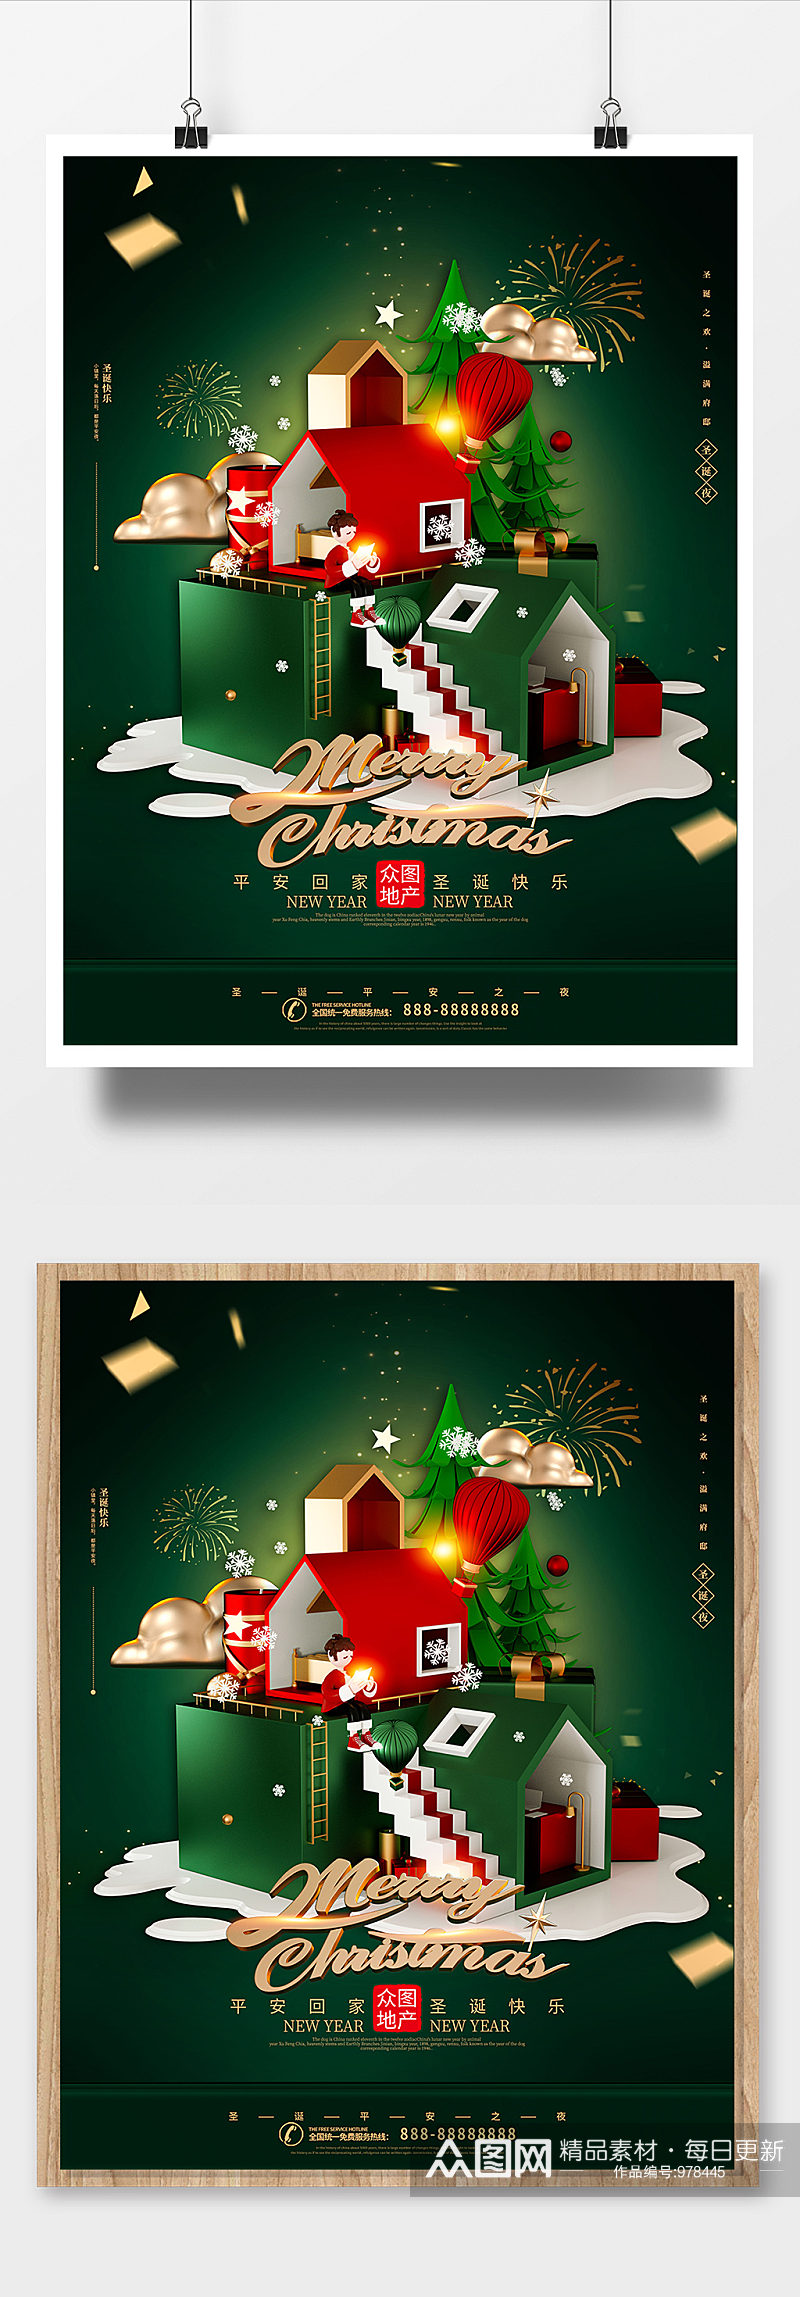 C4D梦幻圣诞节地产海报素材